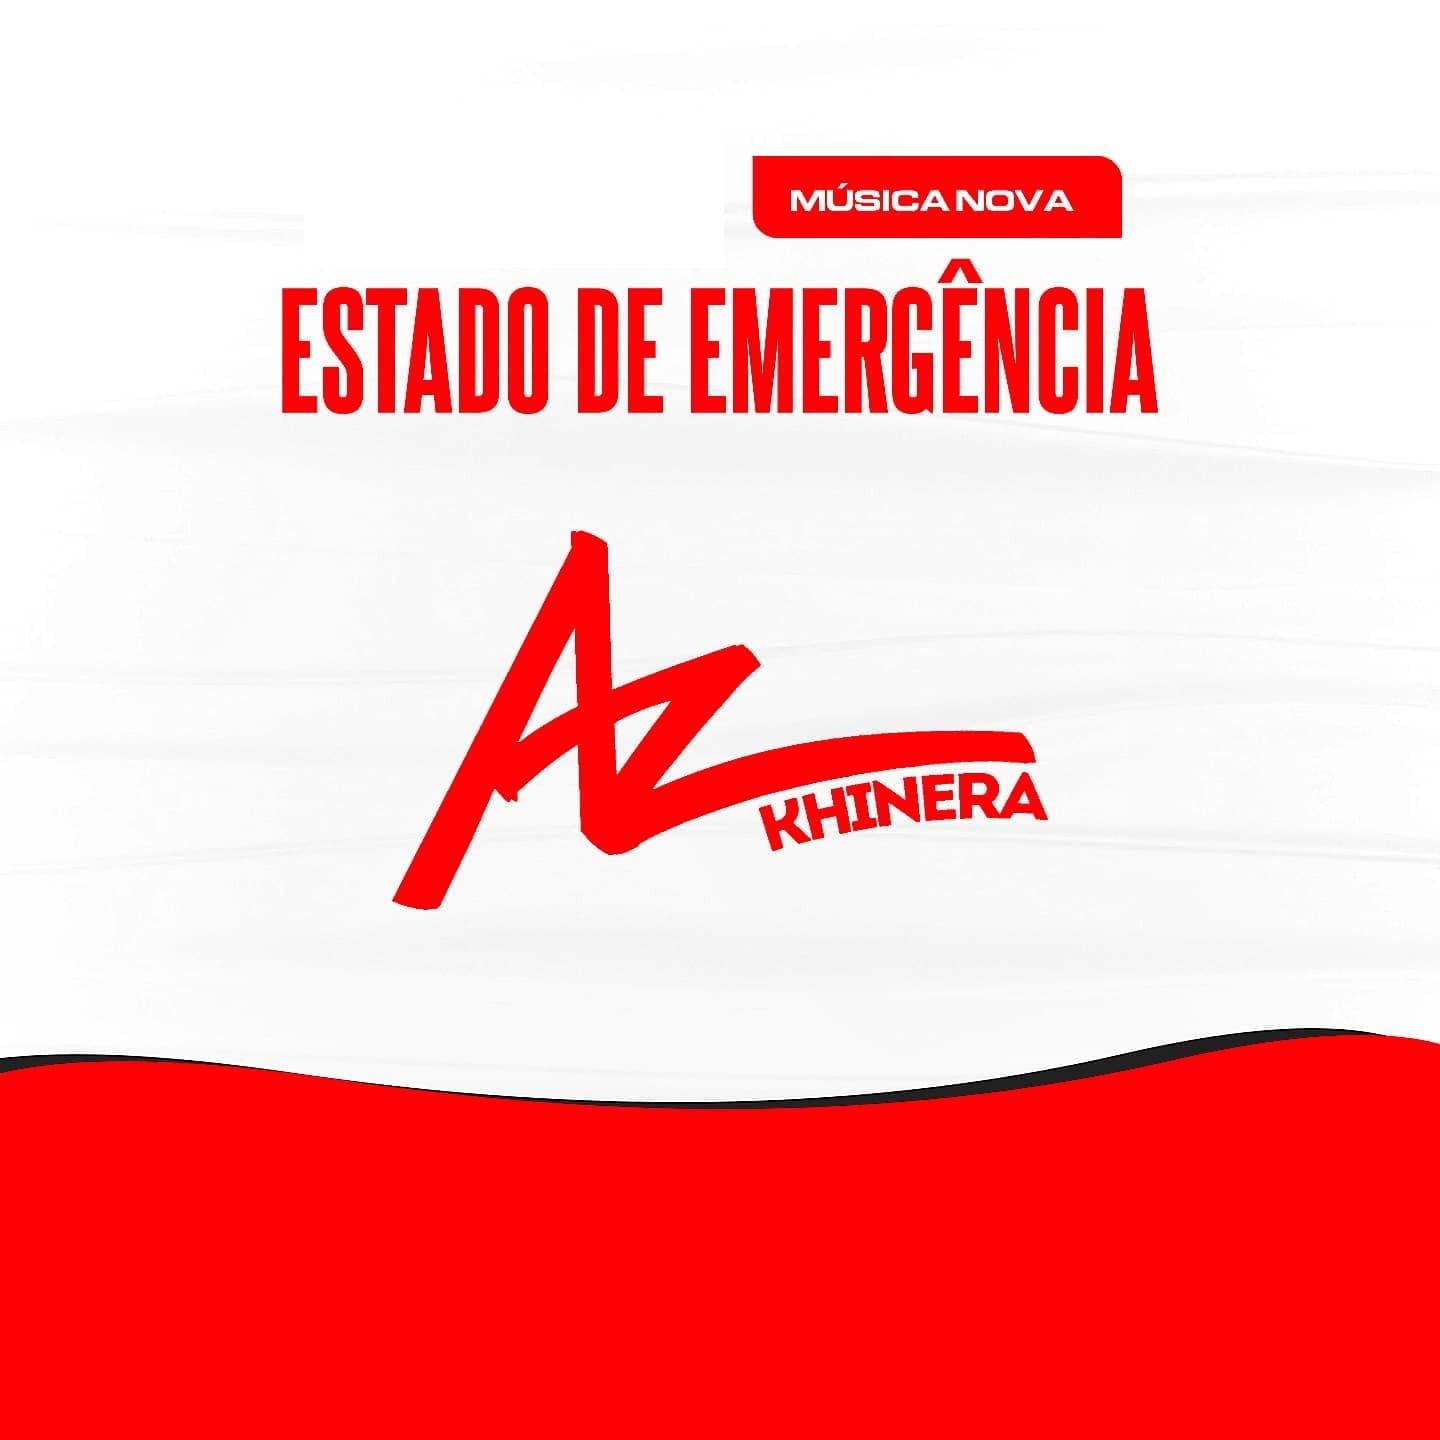 AZ Khinera - Estado de Emergência